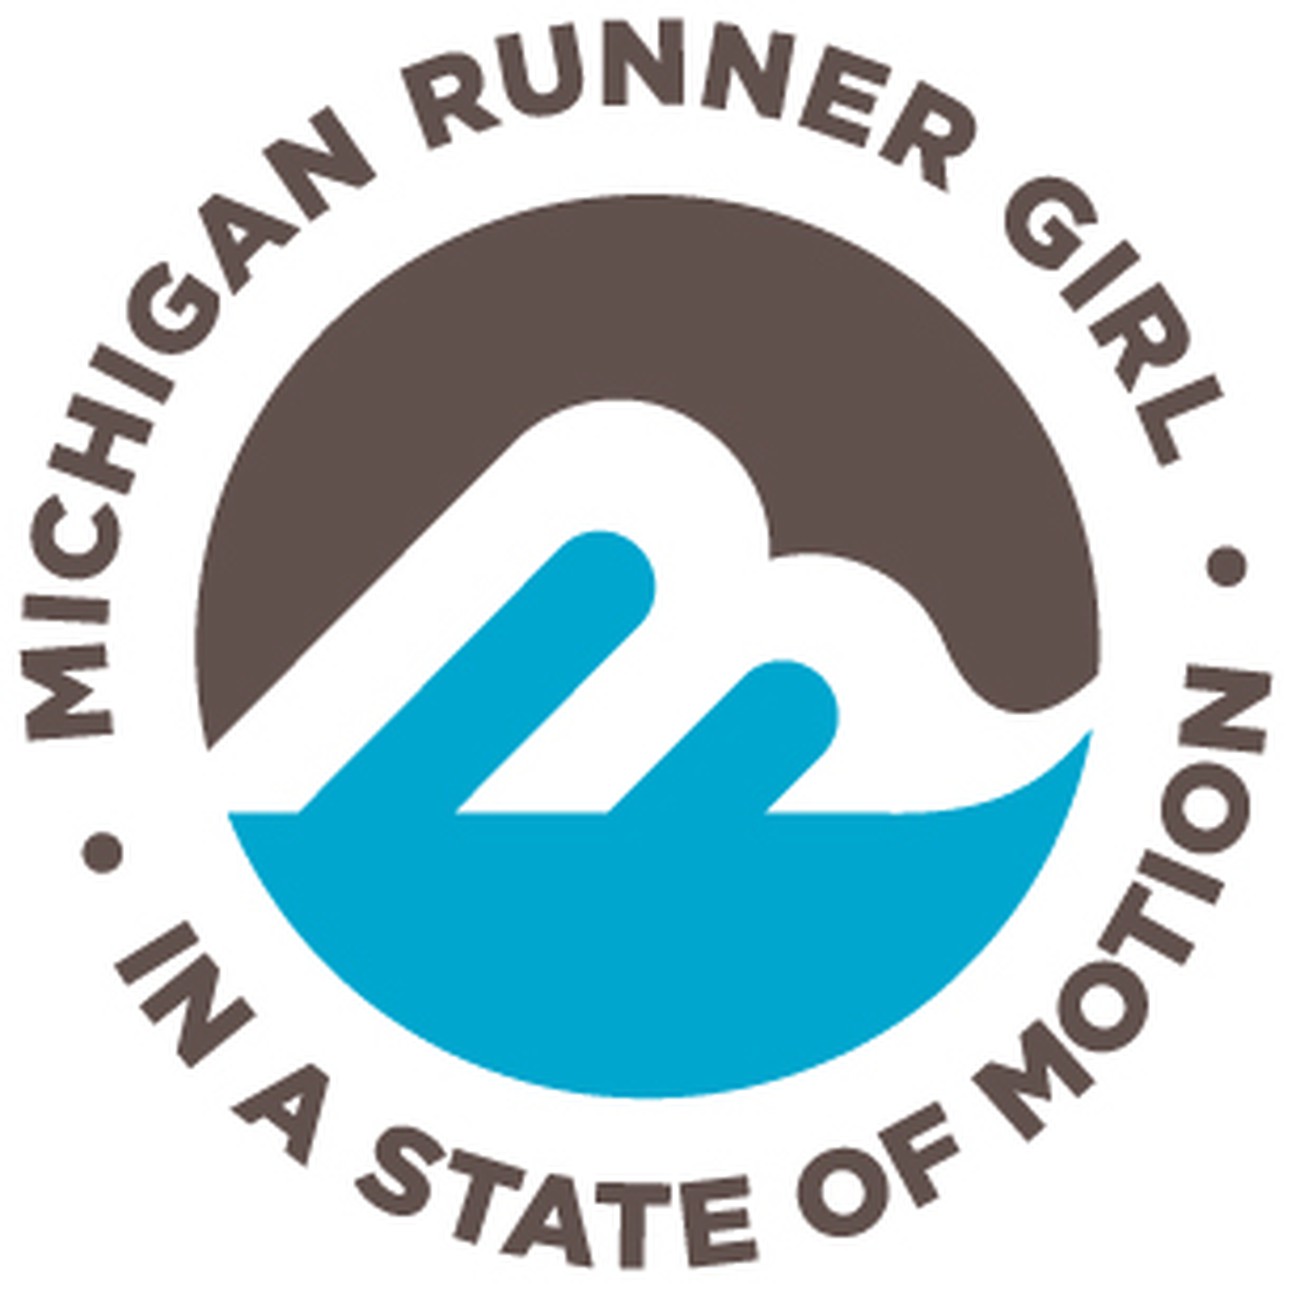 Michigan Runner Girl Trail 10K & 5K logo on RaceRaves